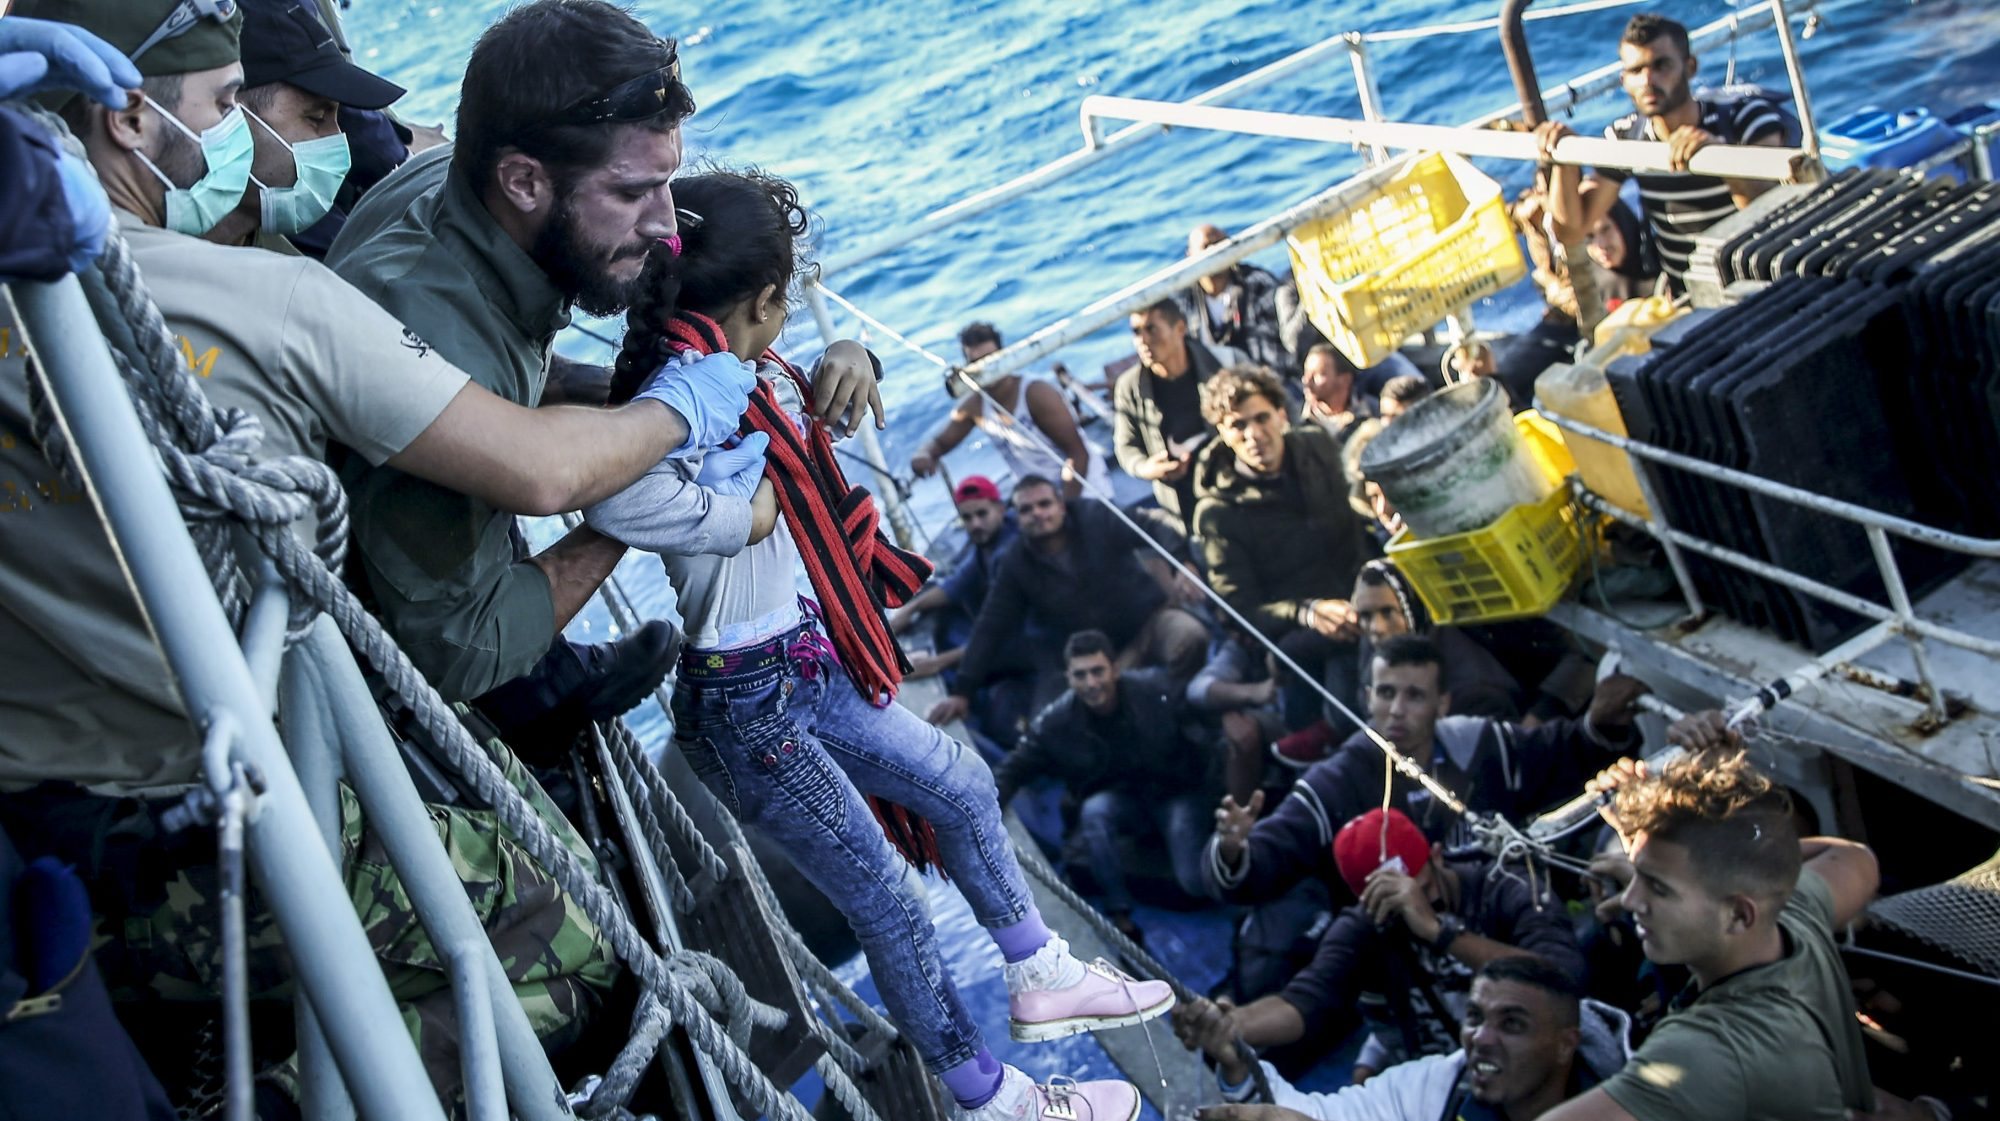 O navio da Marinha portuguesa “Viana do Castelo” resgata migrantes no Mediterrâneo